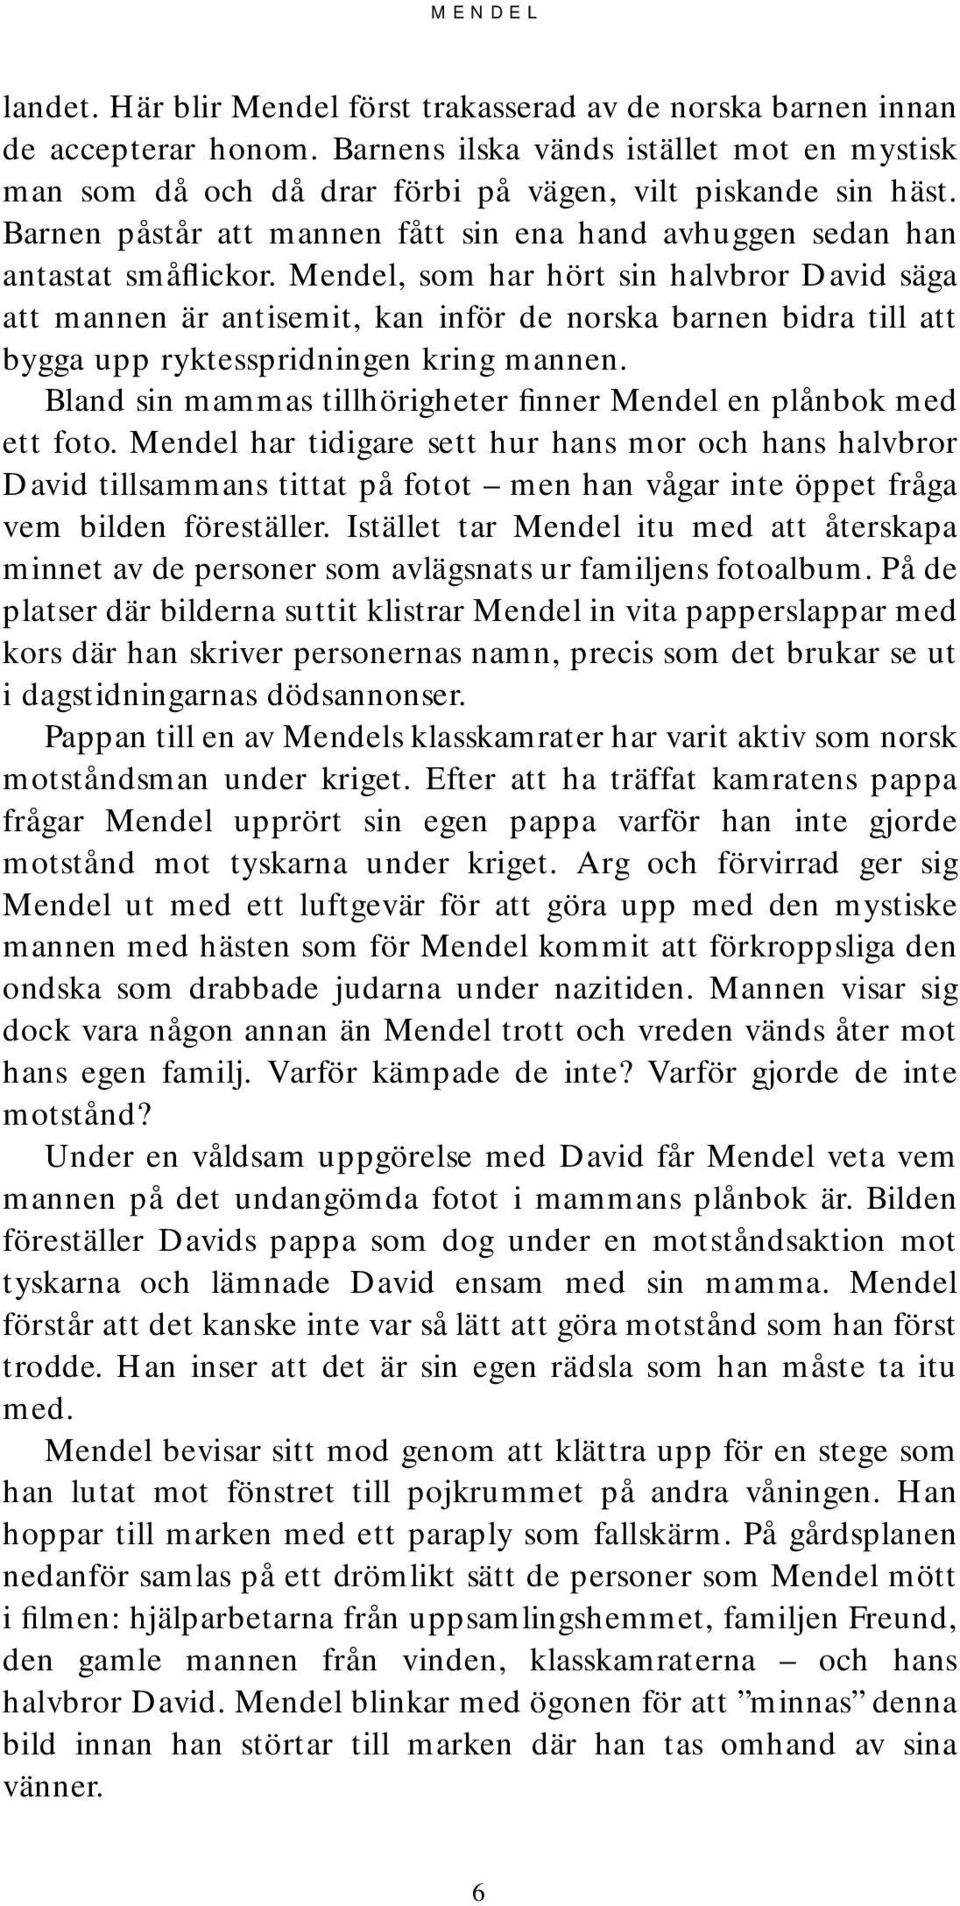 Mendel, som har hört sin halvbror David säga att mannen är antisemit, kan inför de norska barnen bidra till att bygga upp ryktesspridningen kring mannen.